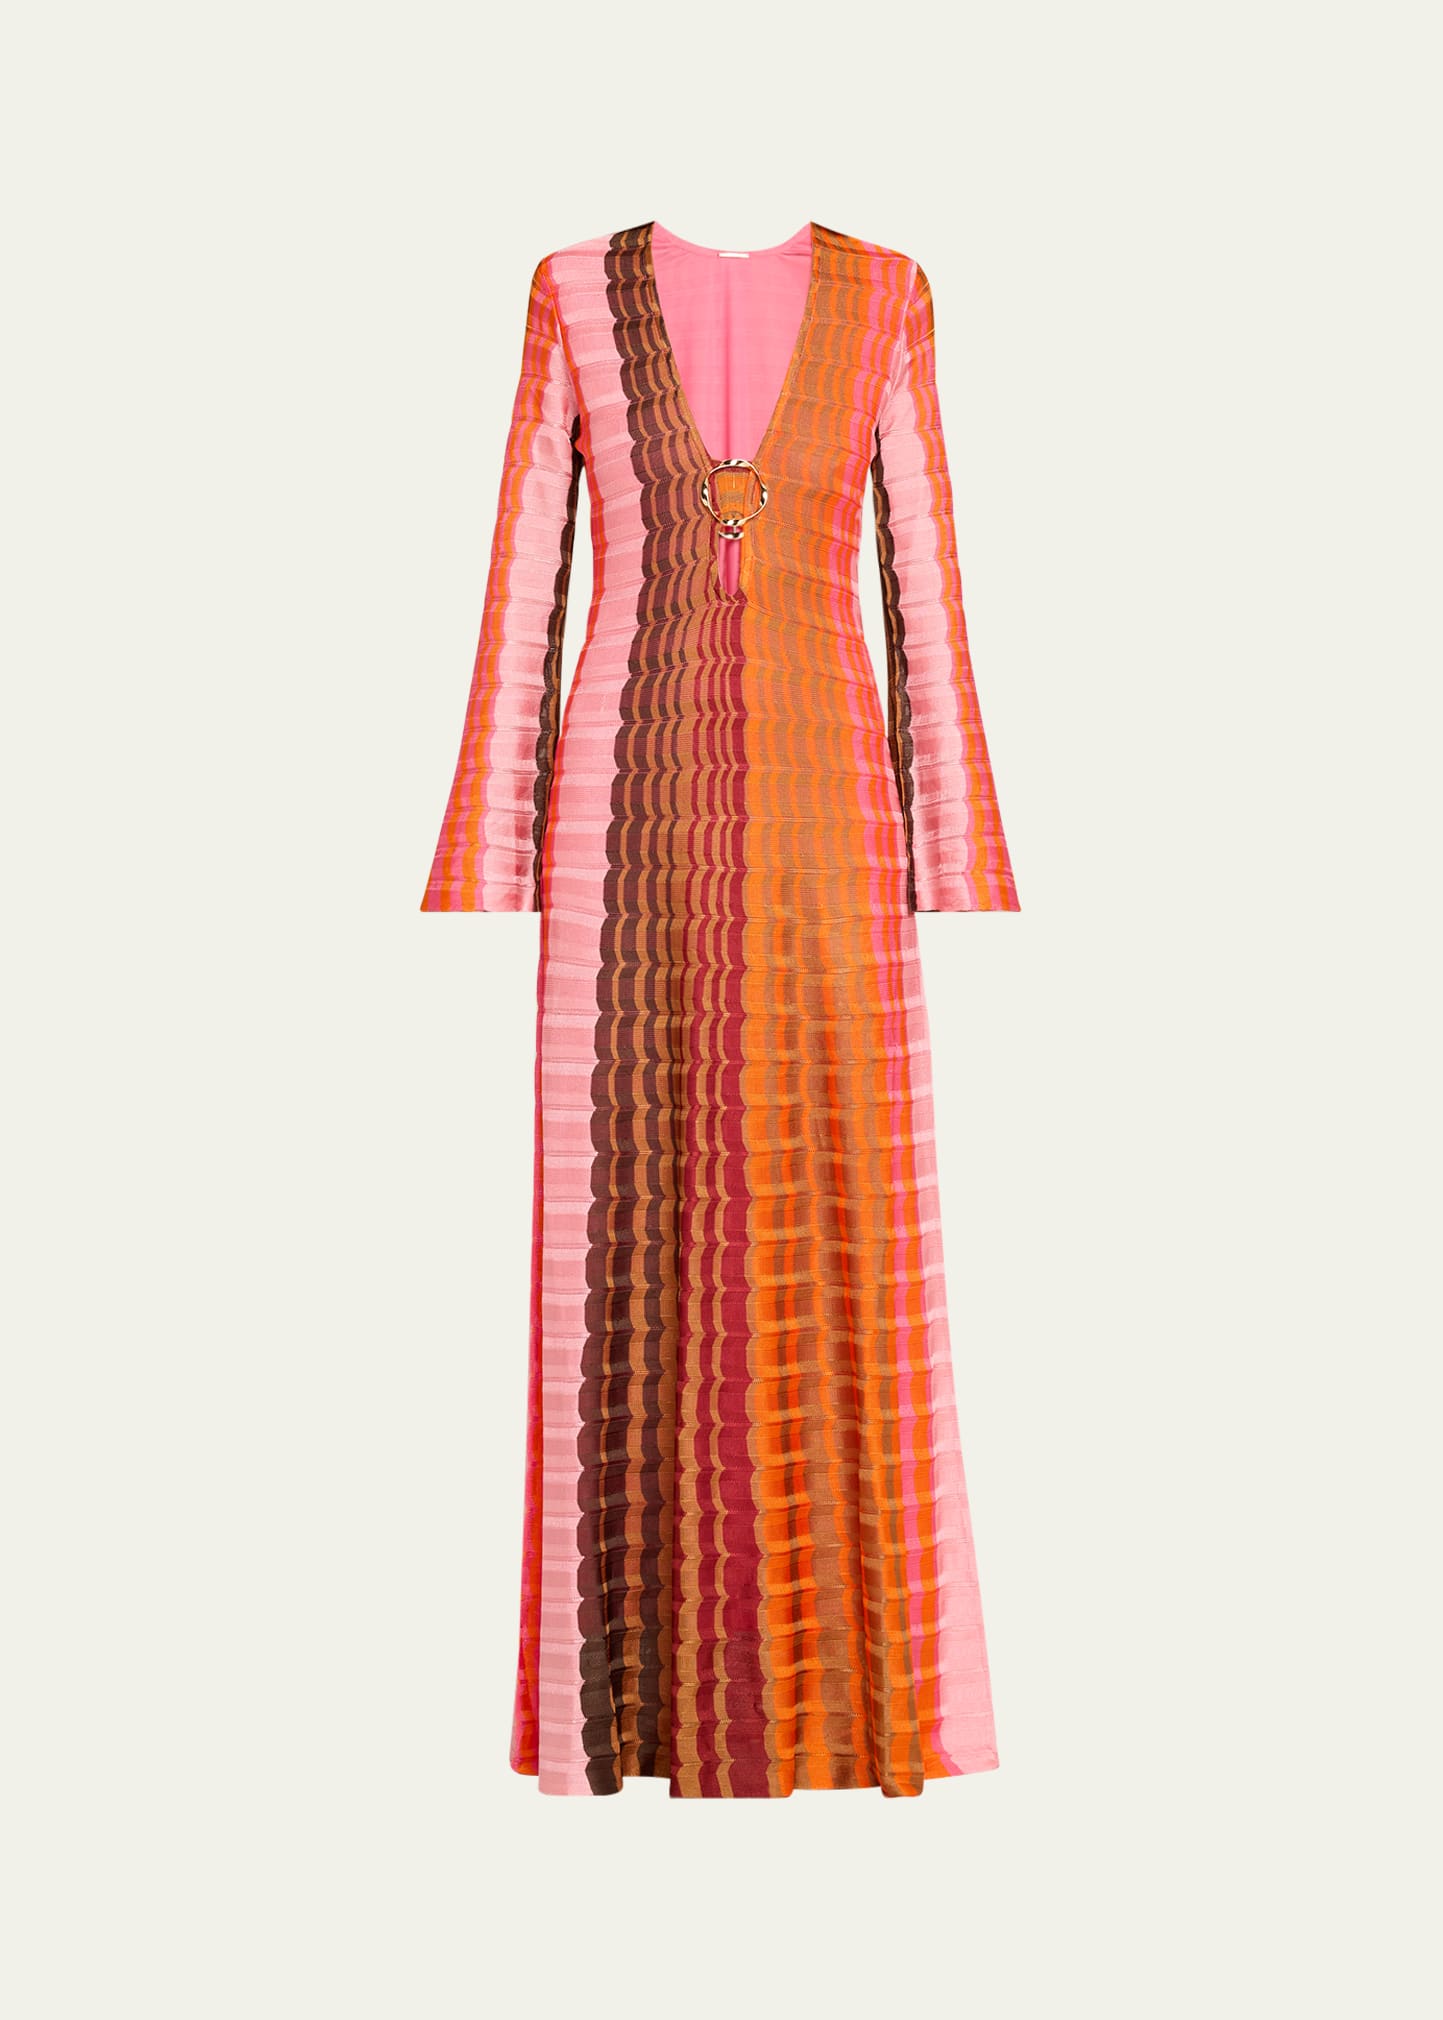 Vibe Wavy Knit Flared-Sleeve Maxi Dress